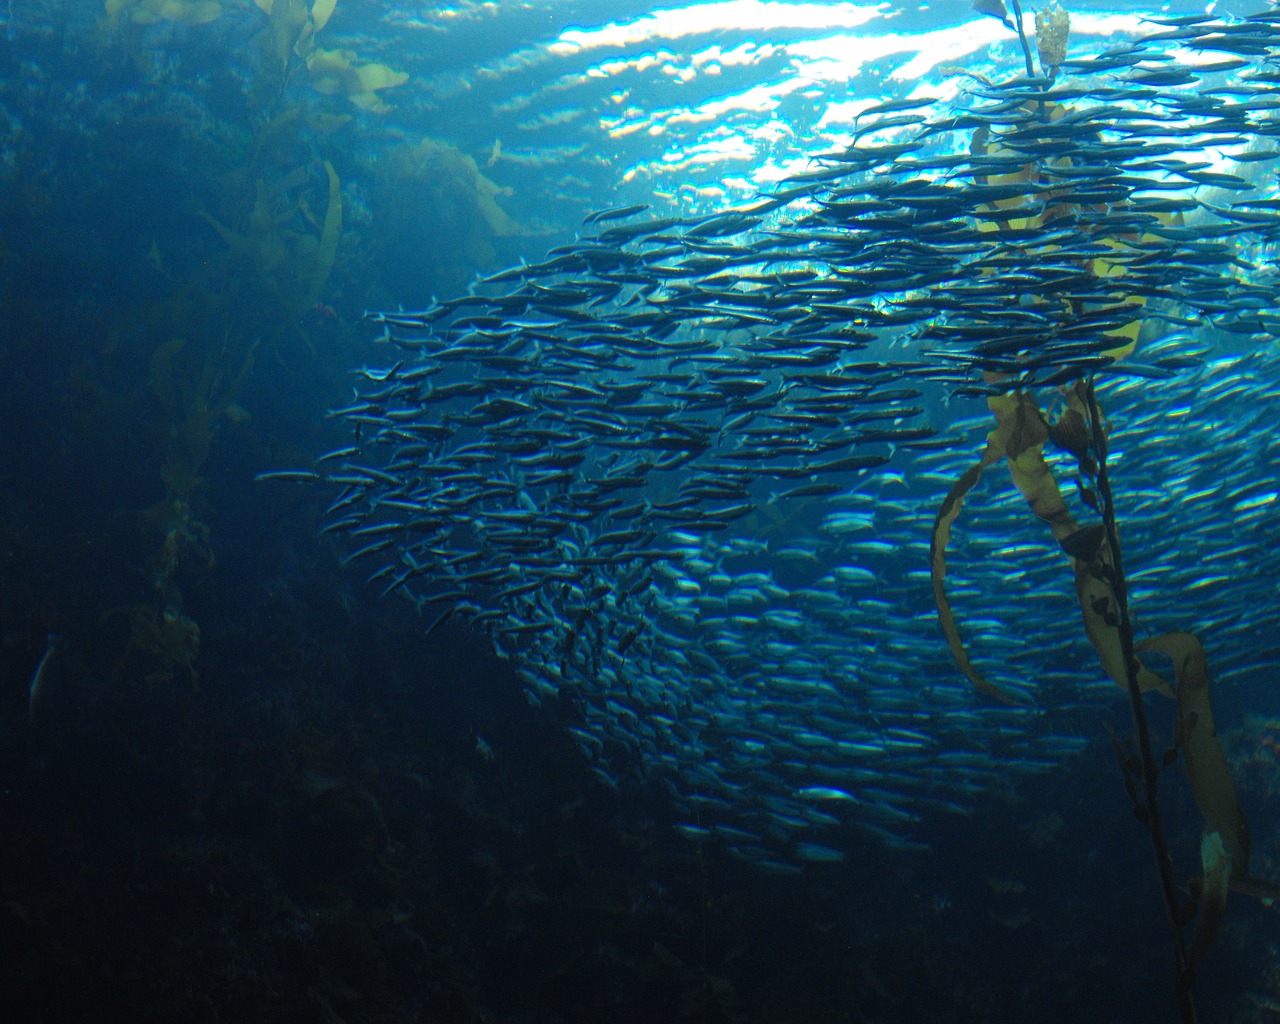 School of fish swimming around seaweed